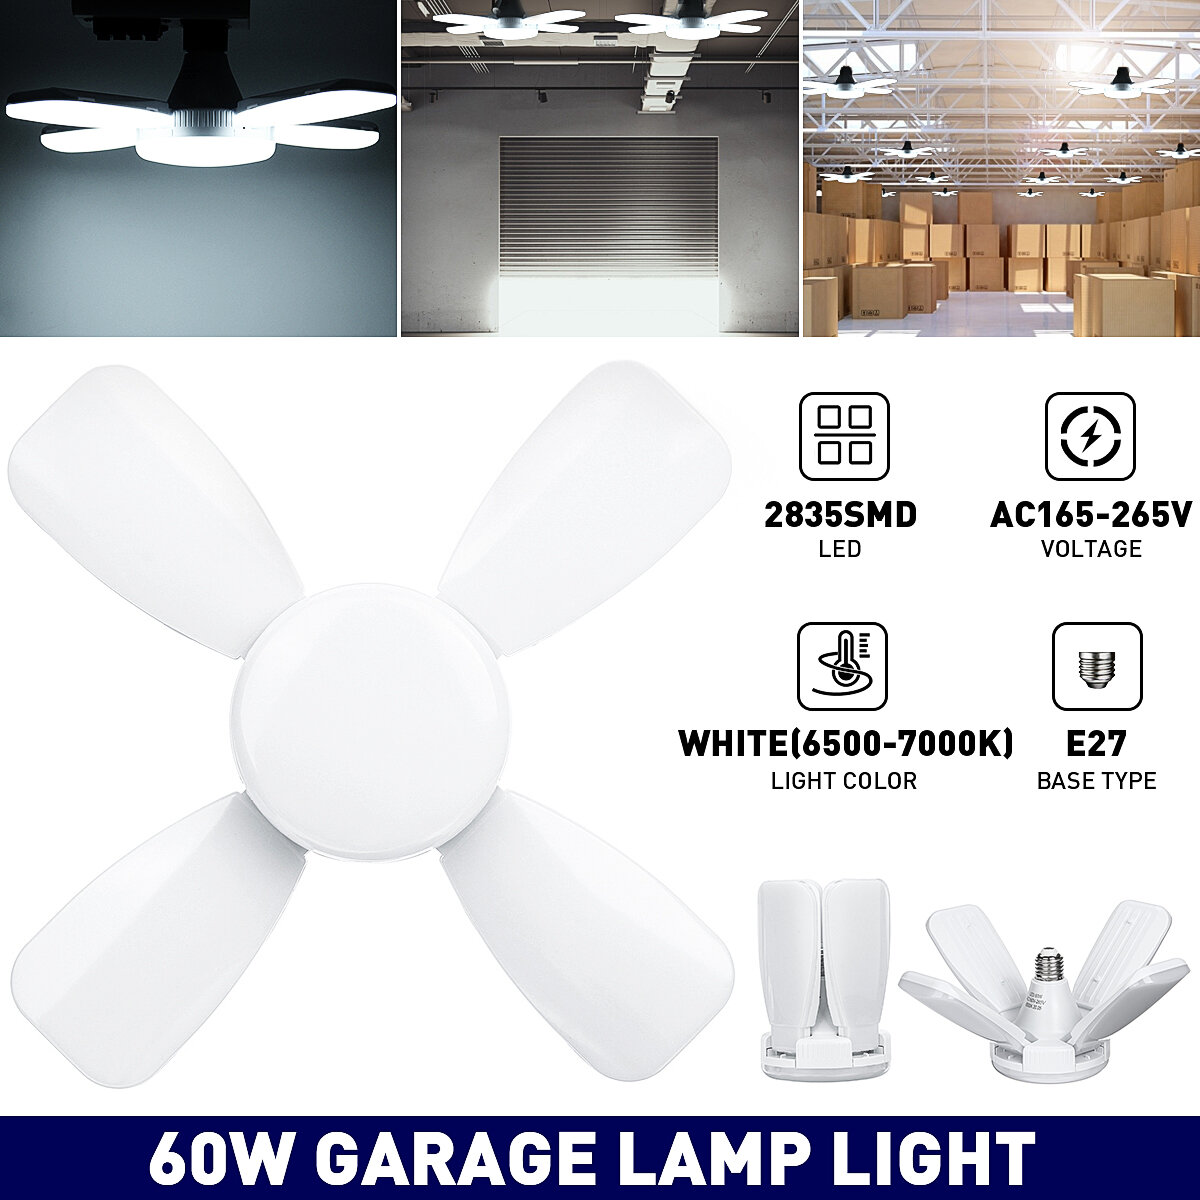 E27 60W LED garage gloeilamp 2835SMD vierbladige vervormbare plafond workshop lamp AC165-265V